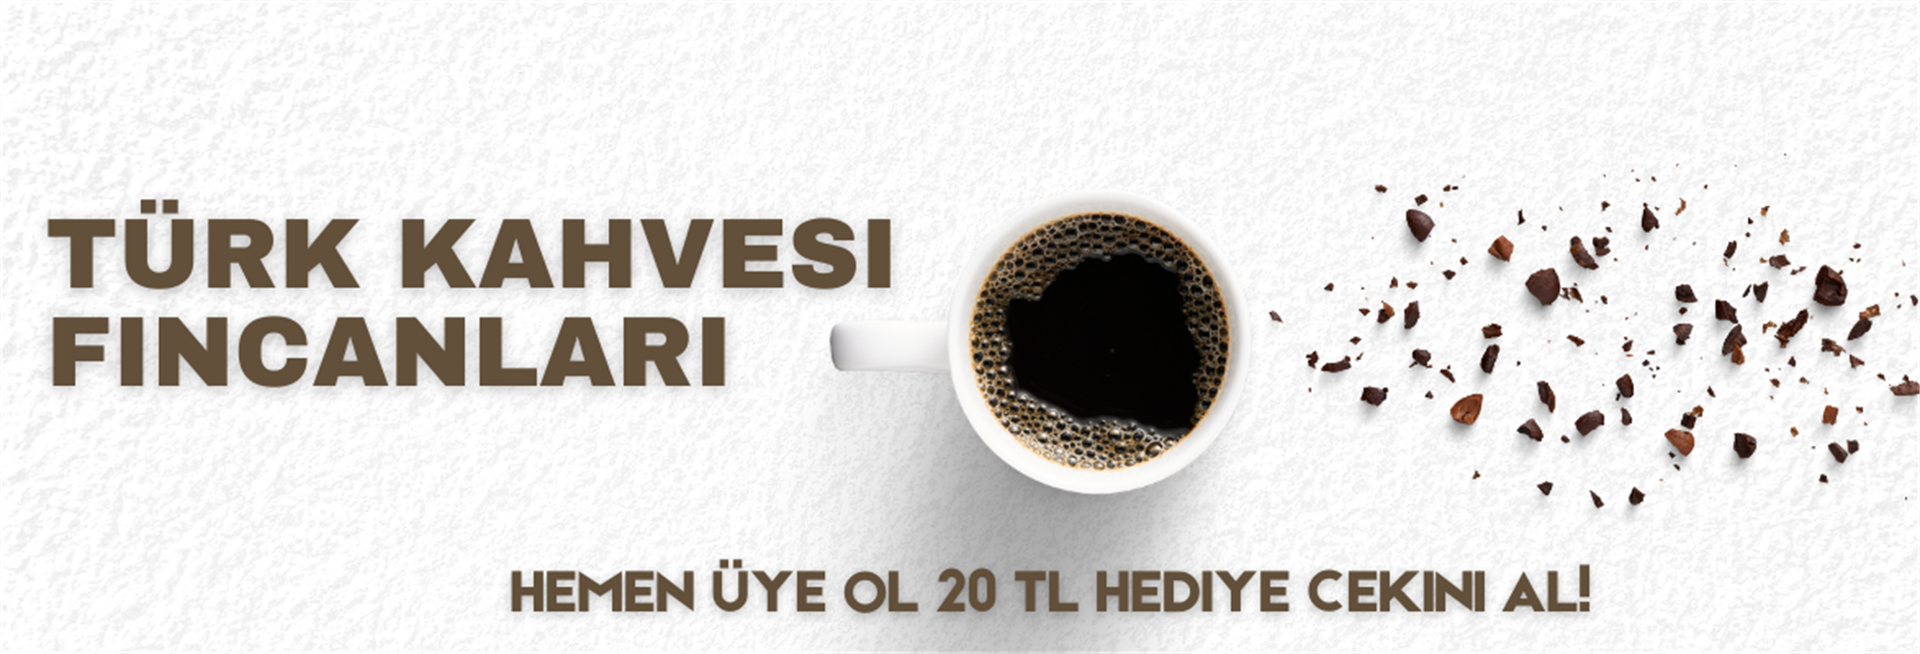 türk kahvesi fincanları